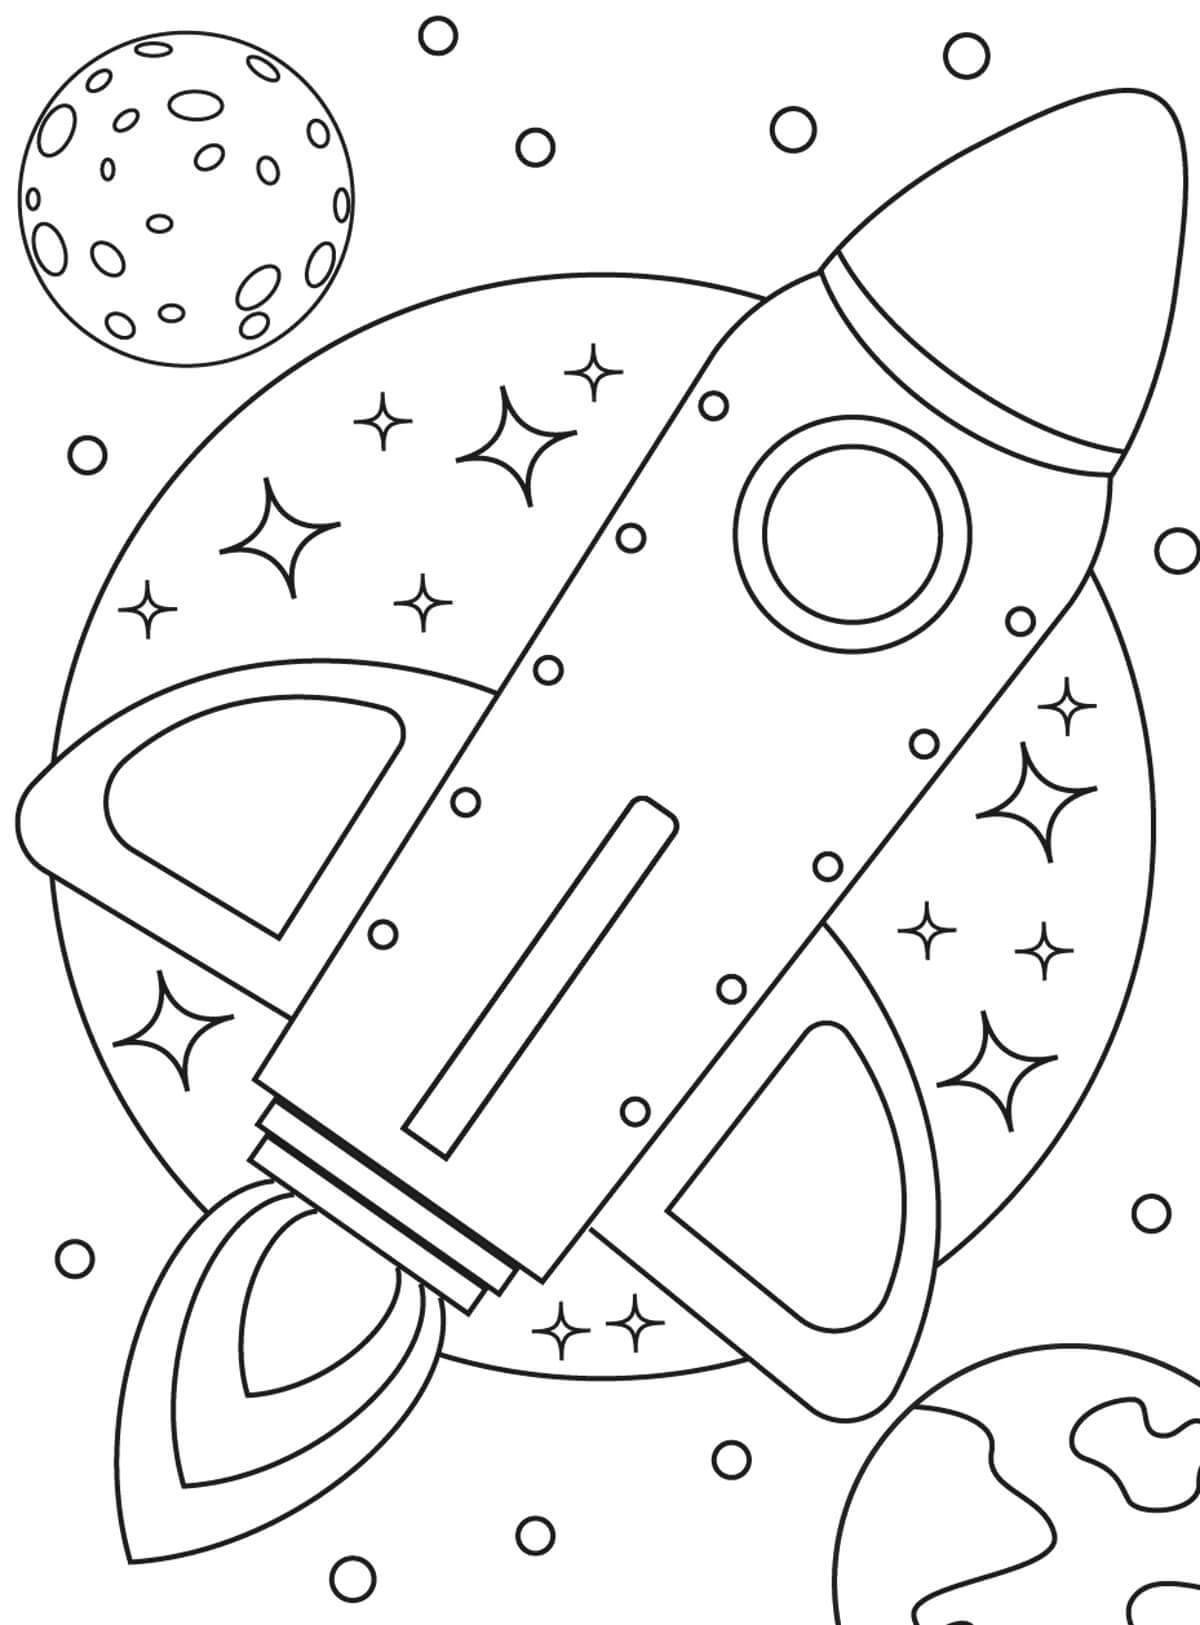 Космос раскраска для детей 3 4 лет. Космос раскраска для детей. Космос раскраска для детей 4 лет. Раскраска. В космосе. Детские раскраски космос.